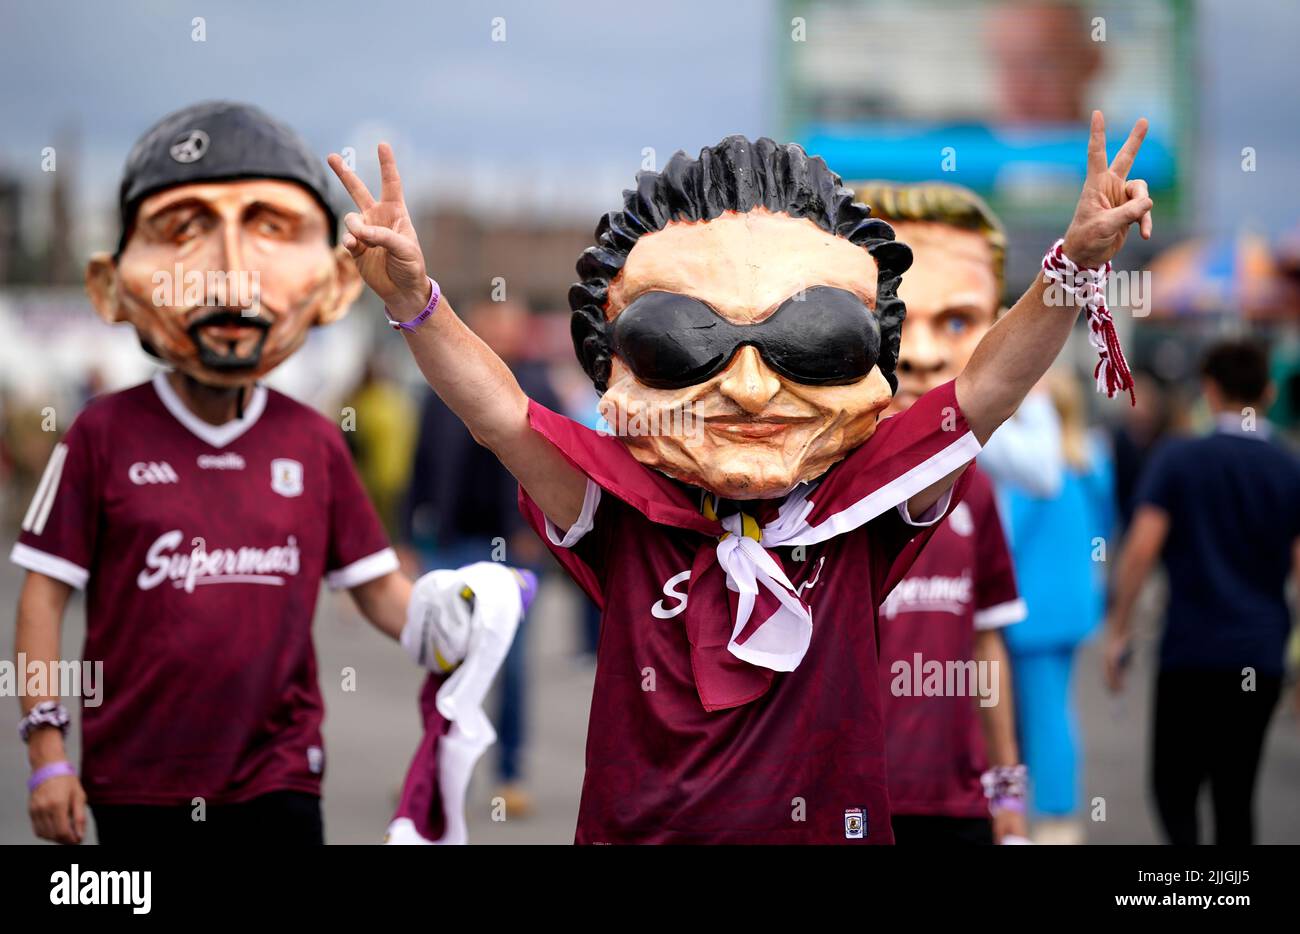 Regacegoers en U2 máscaras durante el segundo día del Festival de Verano de las carreras de Galway 2022 en el hipódromo de Galway en el condado de Galway, Irlanda. Fecha de la foto: Martes 26 de julio de 2022. Foto de stock